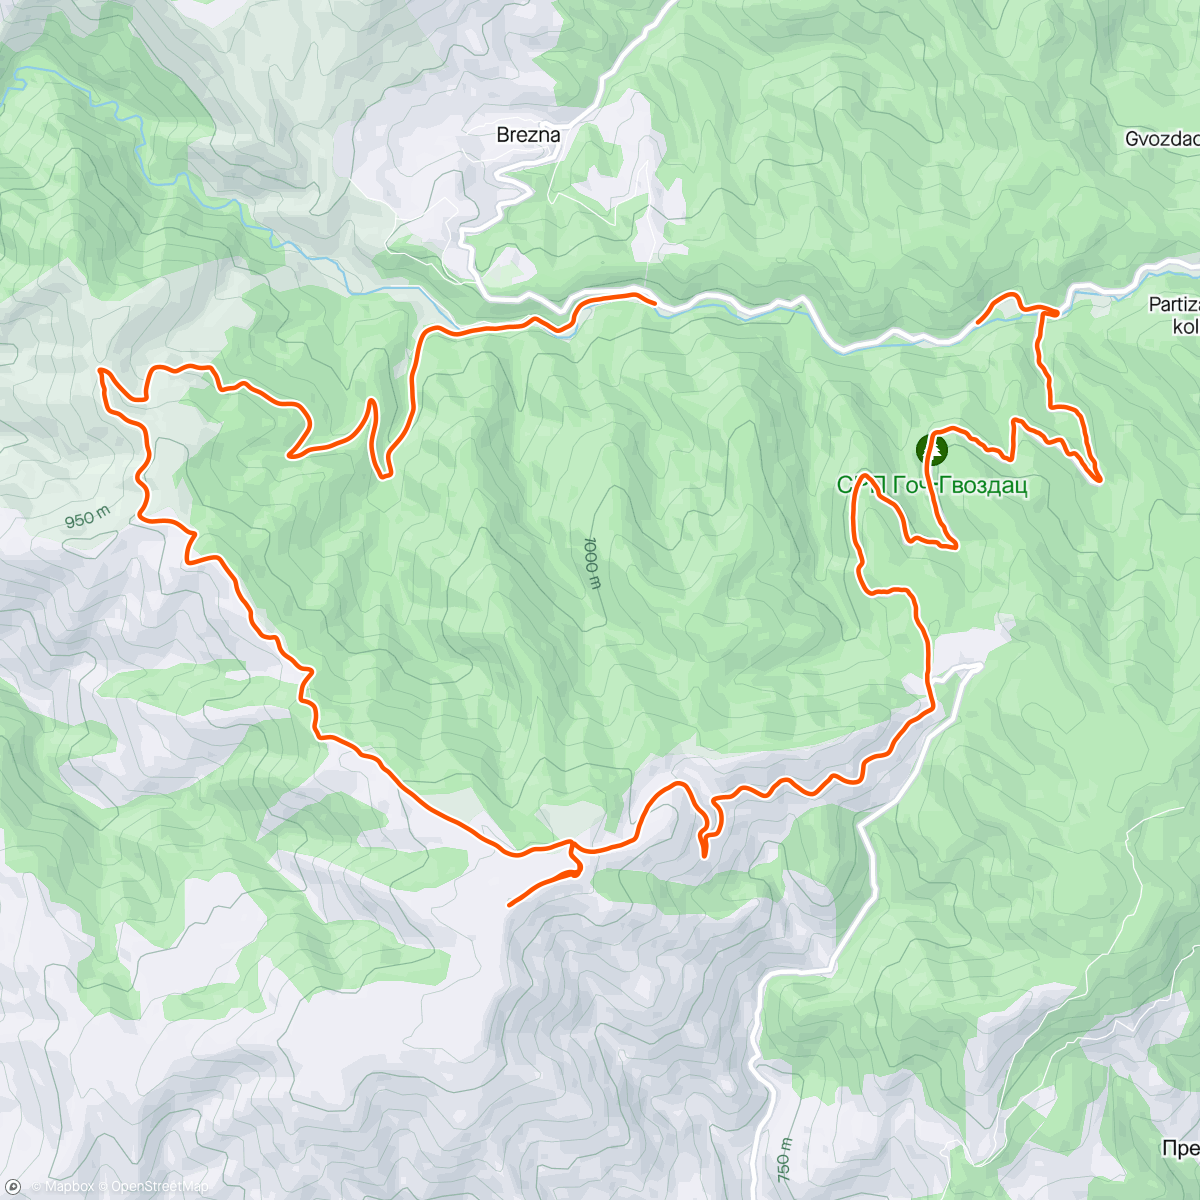 「Studena planina」活動的地圖